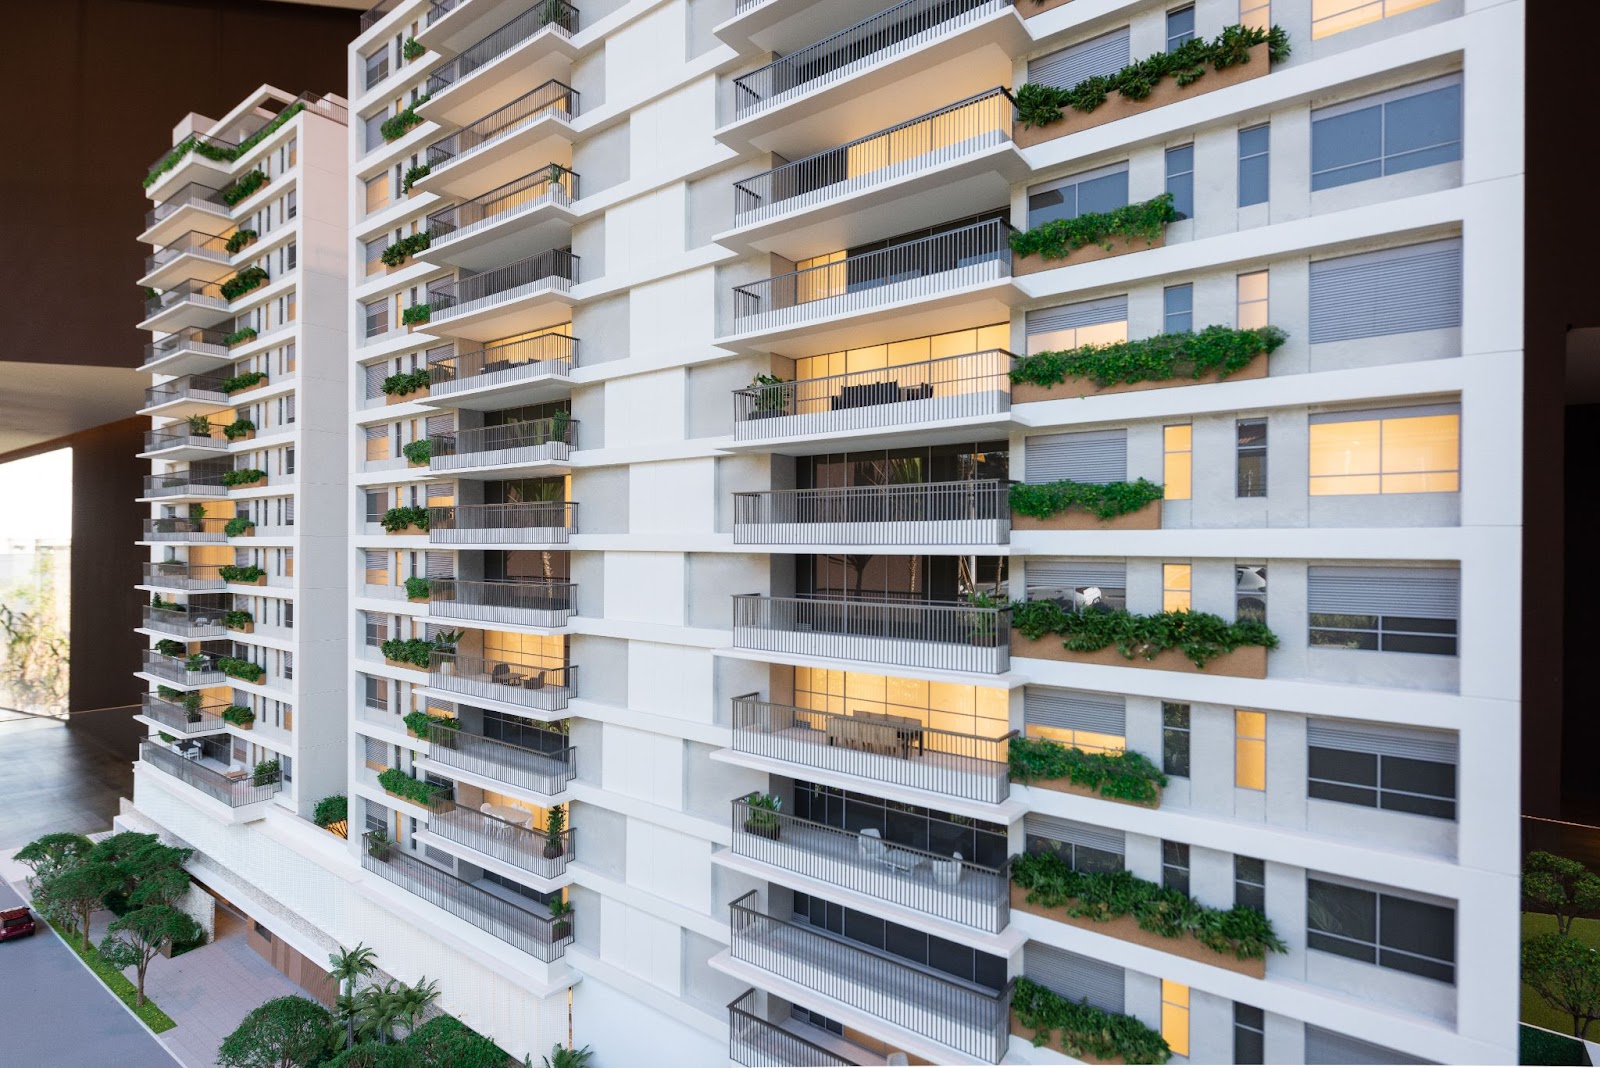 Foto de uma maquete de um lançamento imobiliário grandioso, com muitos apartamentos de alto padrão.